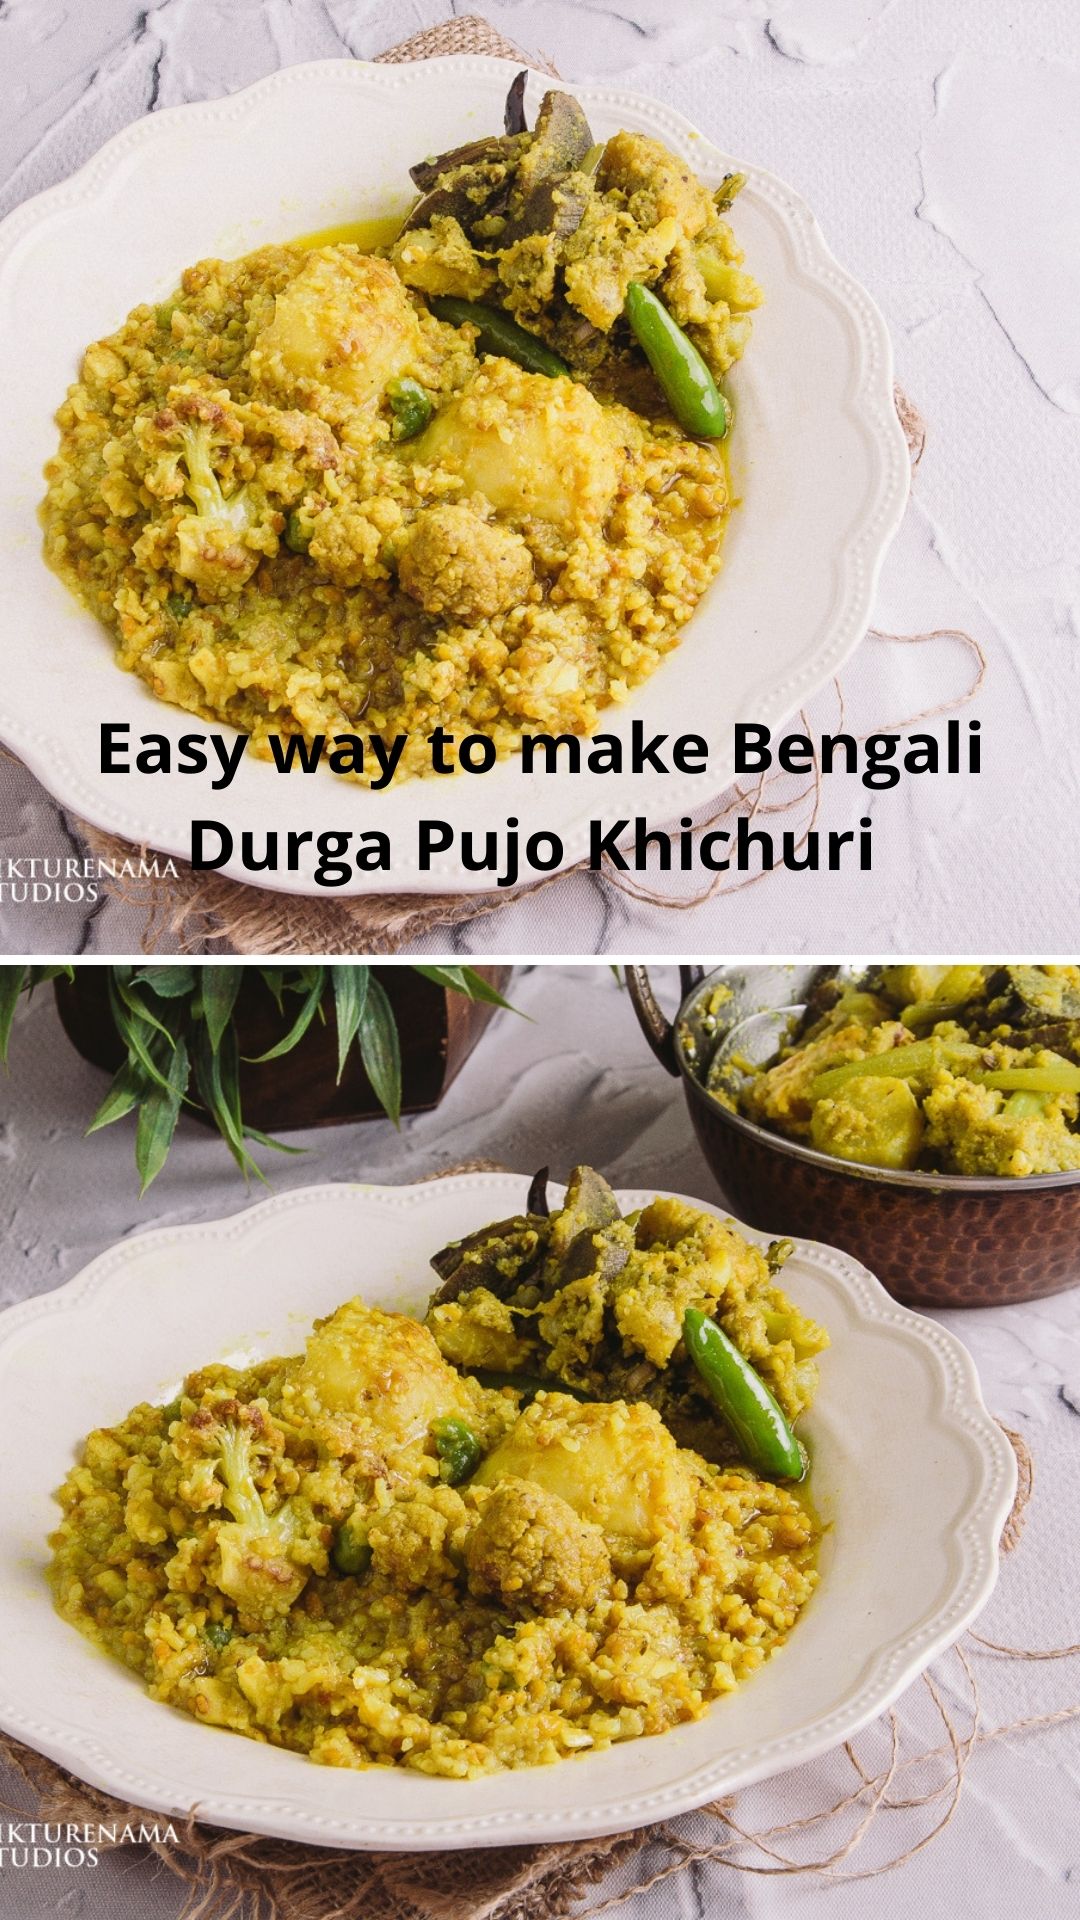 Easy way to make Bengali Bhoger Khichuri - 3